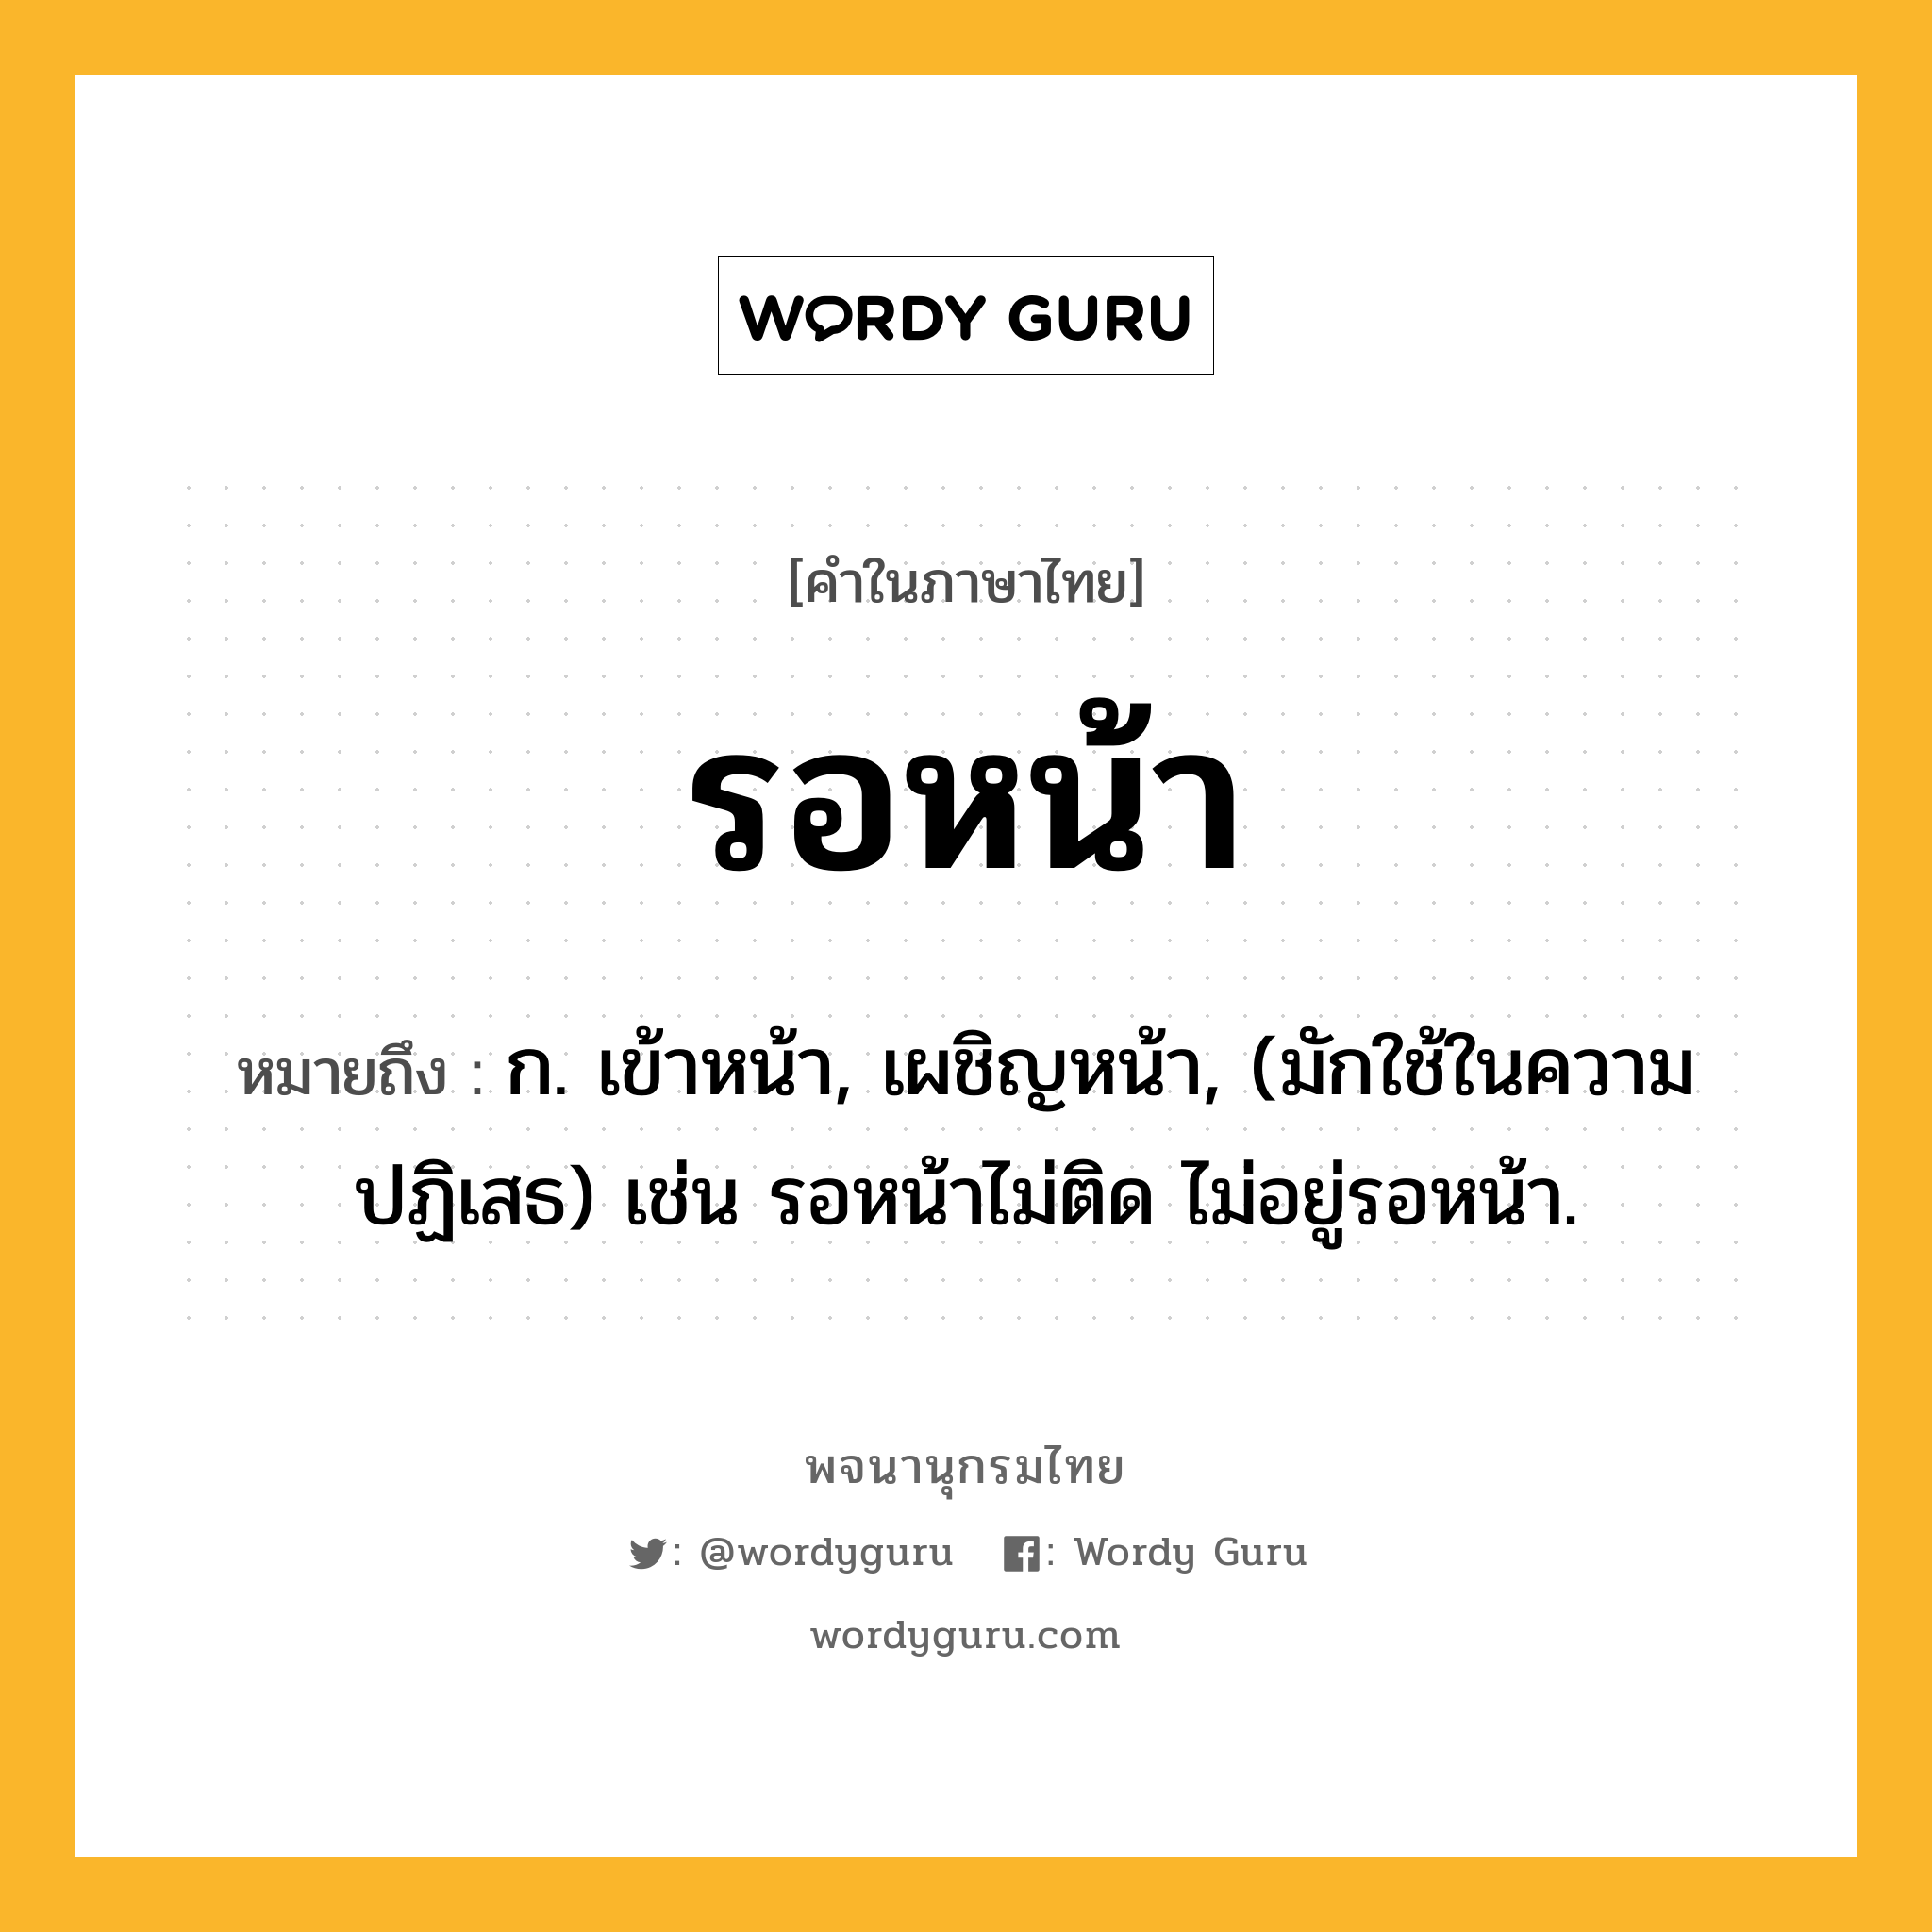 รอหน้า หมายถึงอะไร?, คำในภาษาไทย รอหน้า หมายถึง ก. เข้าหน้า, เผชิญหน้า, (มักใช้ในความปฏิเสธ) เช่น รอหน้าไม่ติด ไม่อยู่รอหน้า.